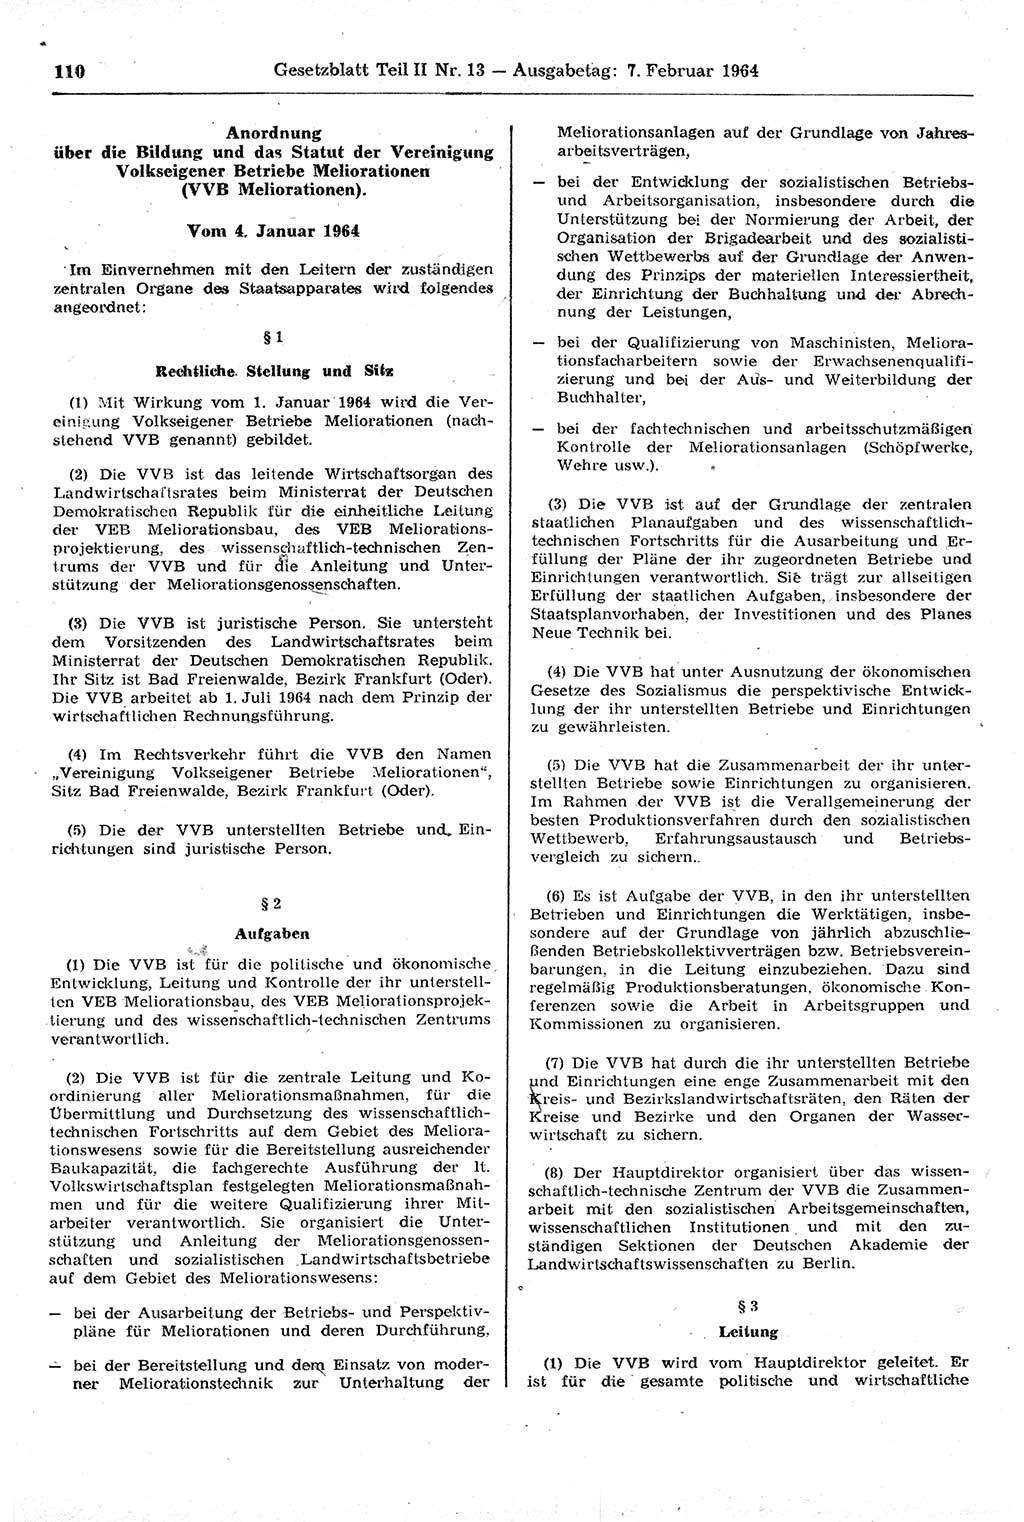 Gesetzblatt (GBl.) der Deutschen Demokratischen Republik (DDR) Teil ⅠⅠ 1964, Seite 110 (GBl. DDR ⅠⅠ 1964, S. 110)